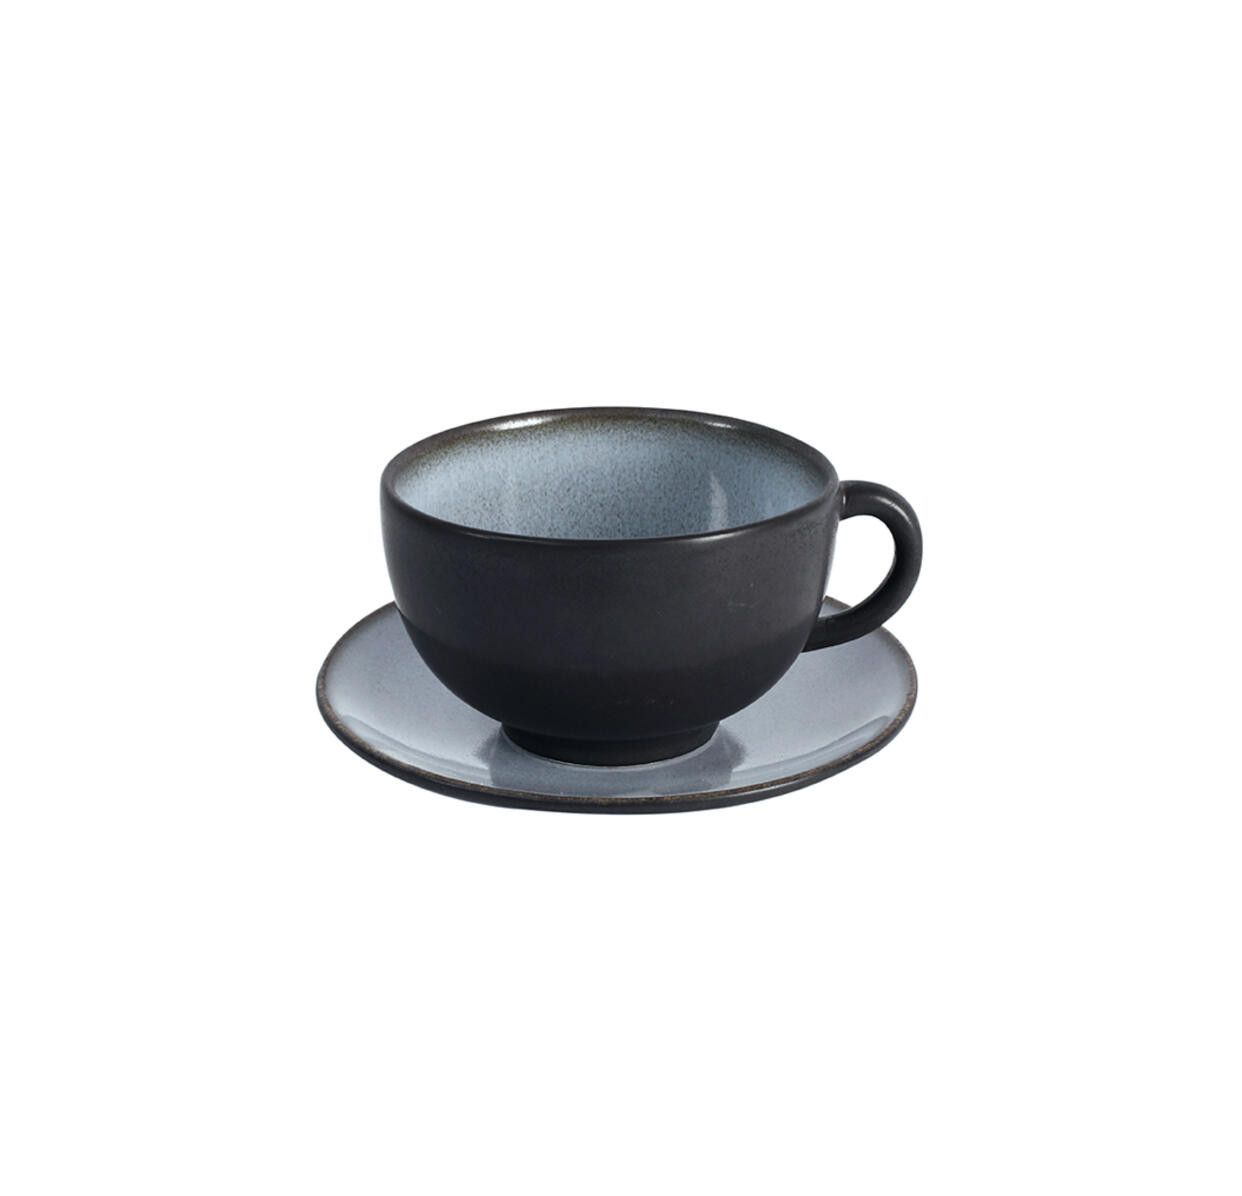 cup & saucer - m  tourron  écorce ceramic manufacturer